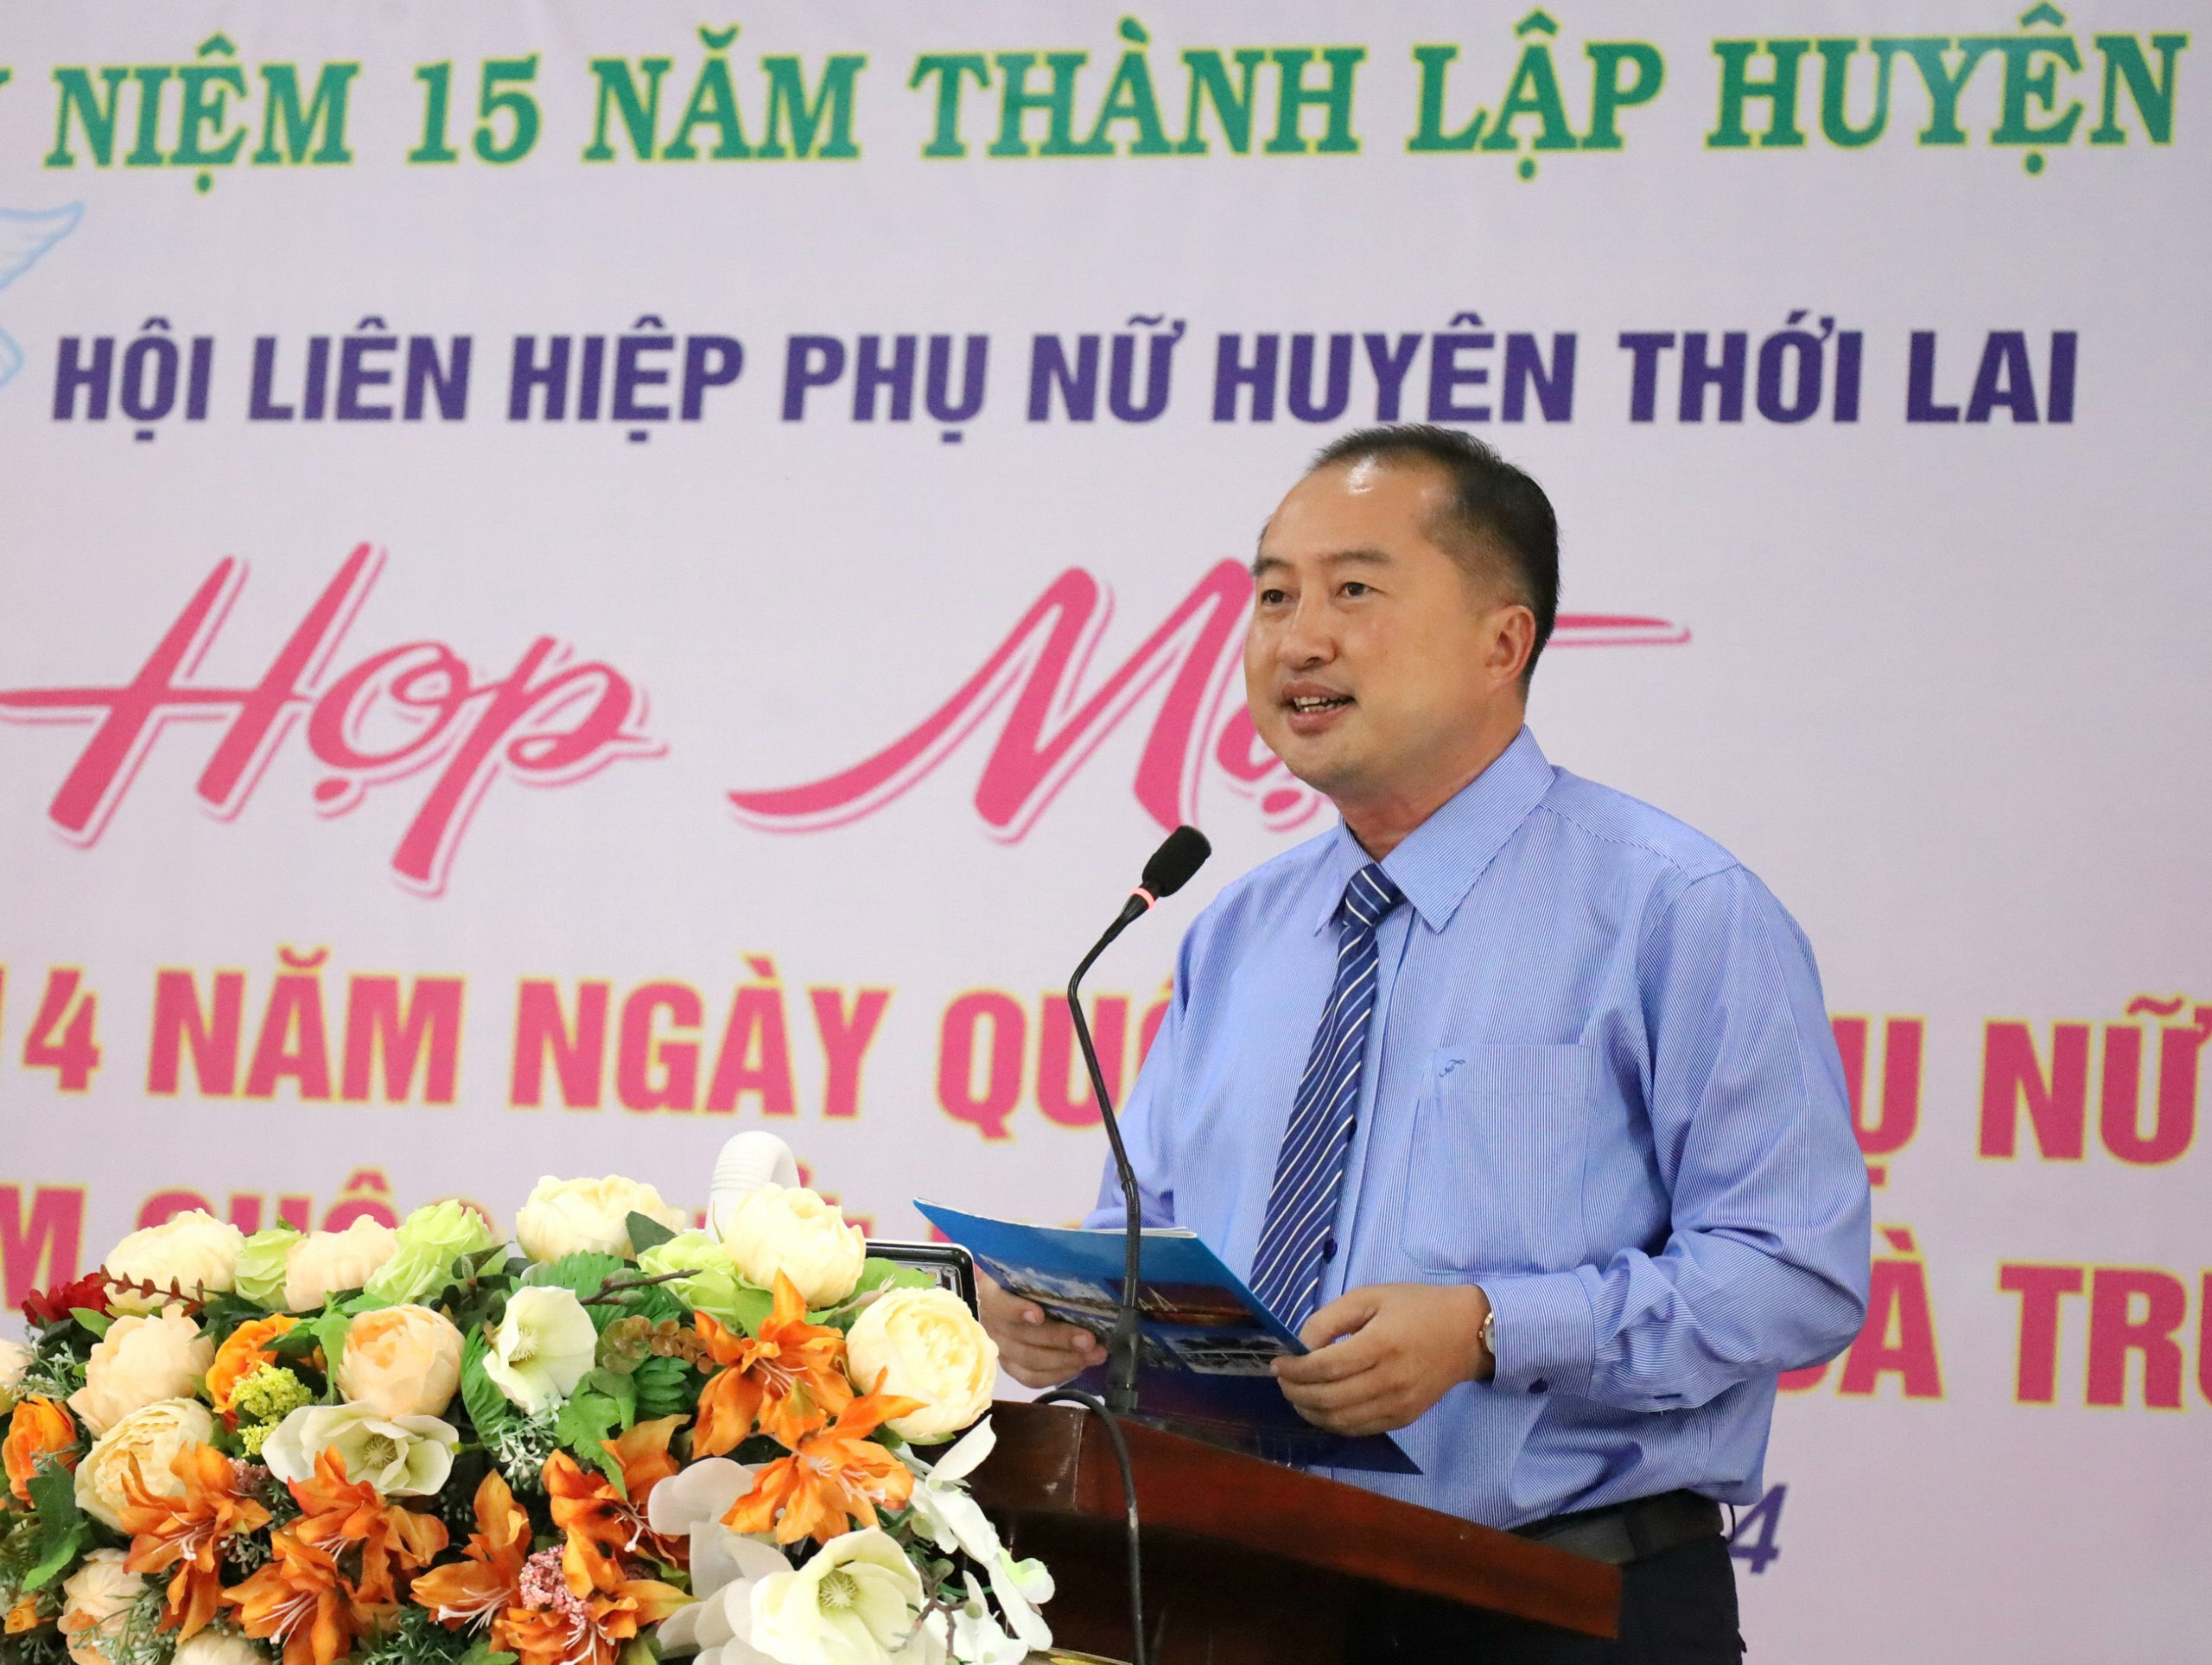 Ông Huỳnh Văn Tùng – Phó Bí thư thường trực Huyện ủy Thới Lai phát biểu chào mừng tại buổi họp mặt.